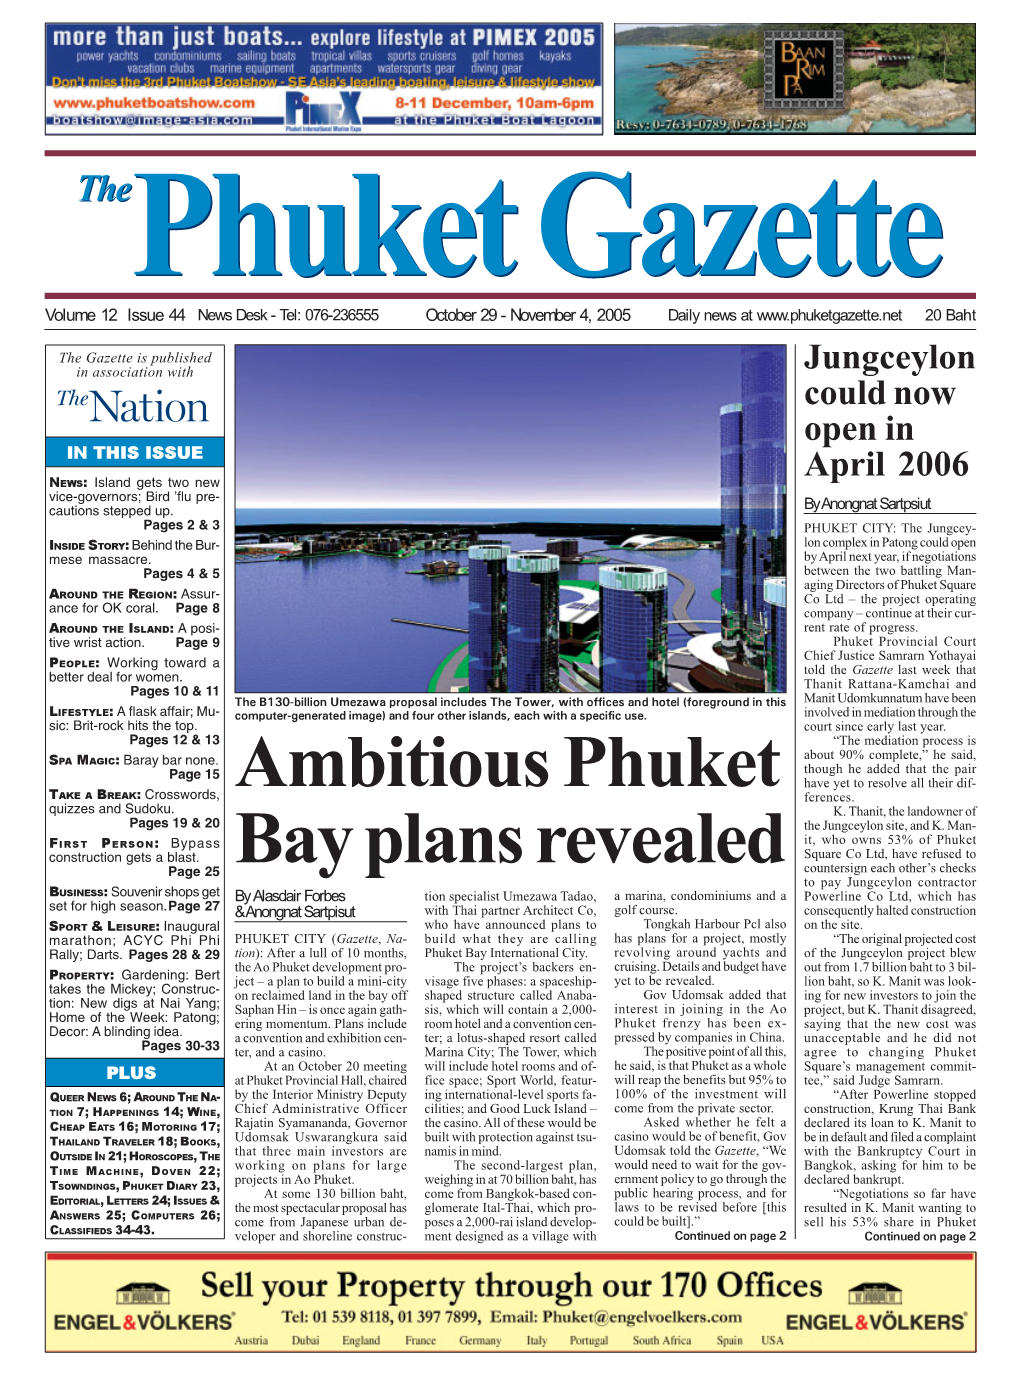 Ambitious Phuket Bay Plans Revealed